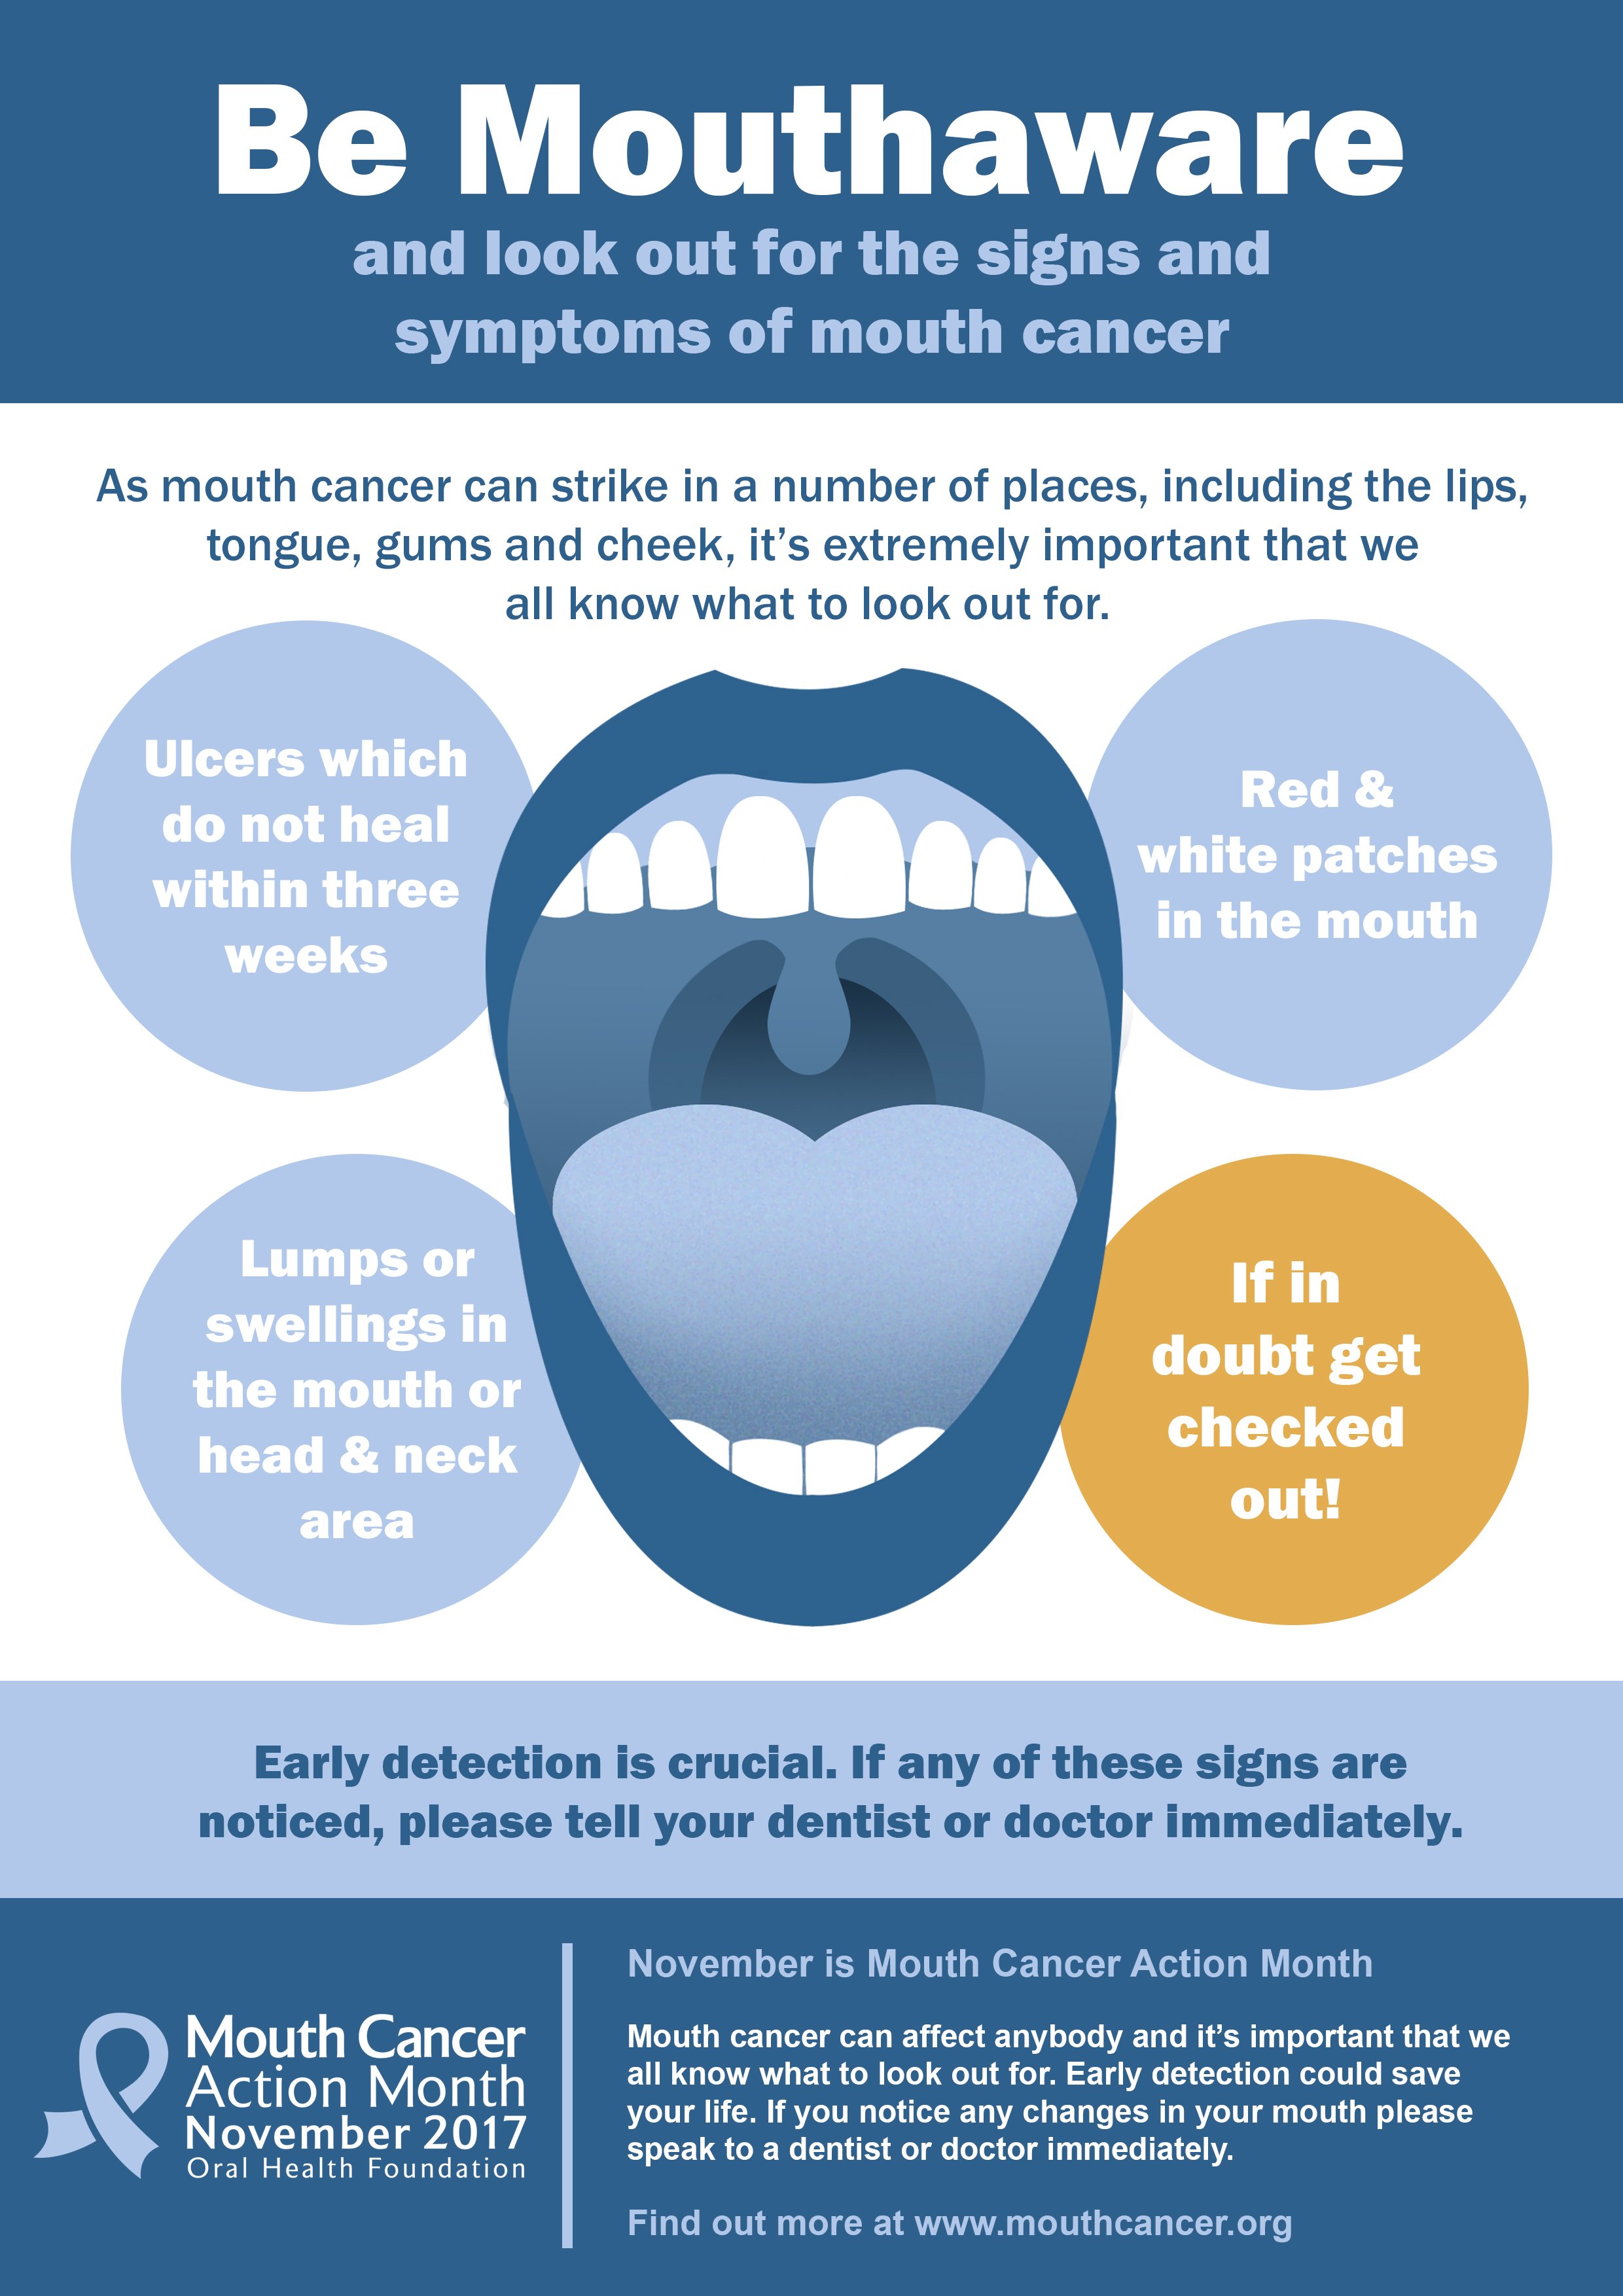 oral cancer poster presentation